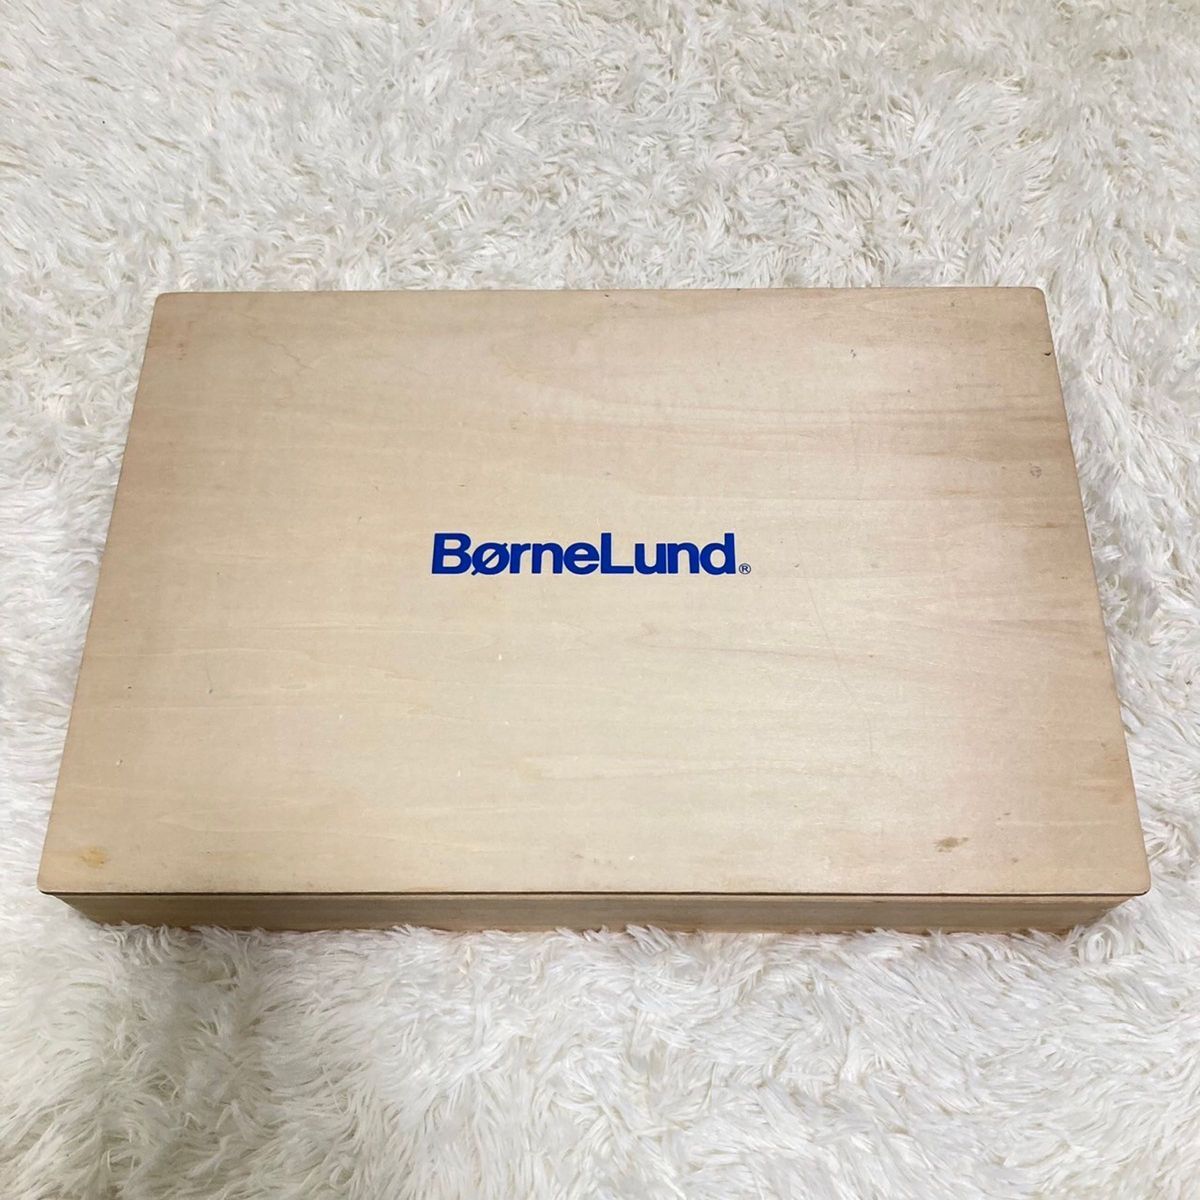 【美品】ボーネルンド 積み木 カラー 木製 知育玩具BorneLund_画像2